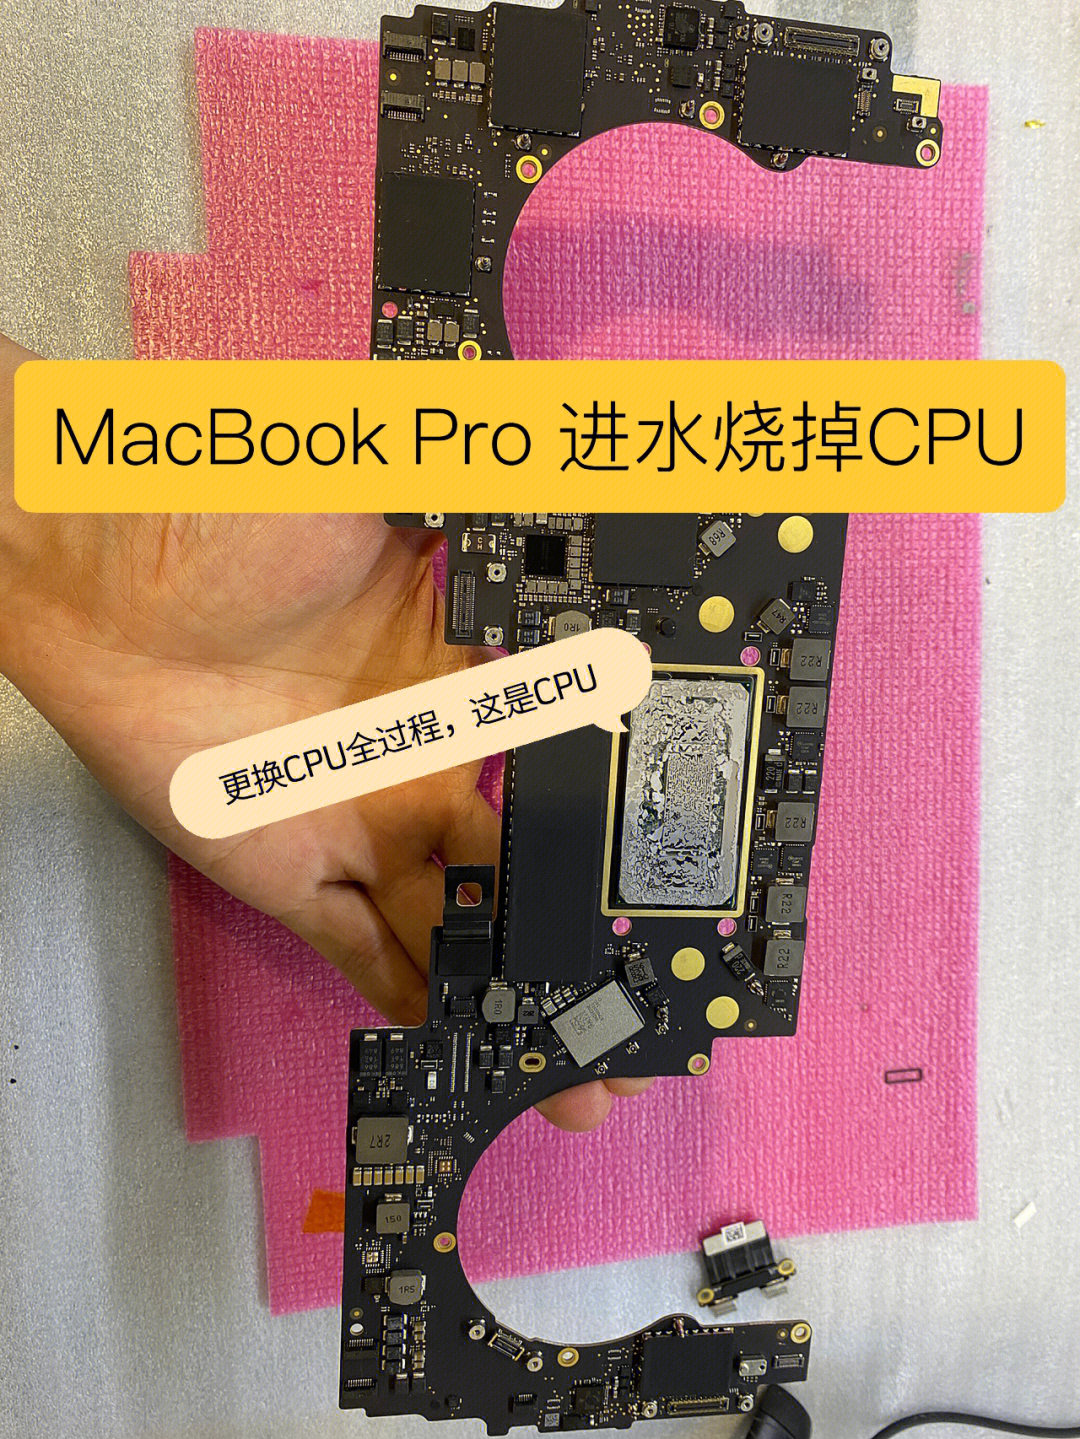 macbookpro烧掉cpu是可以维修好的